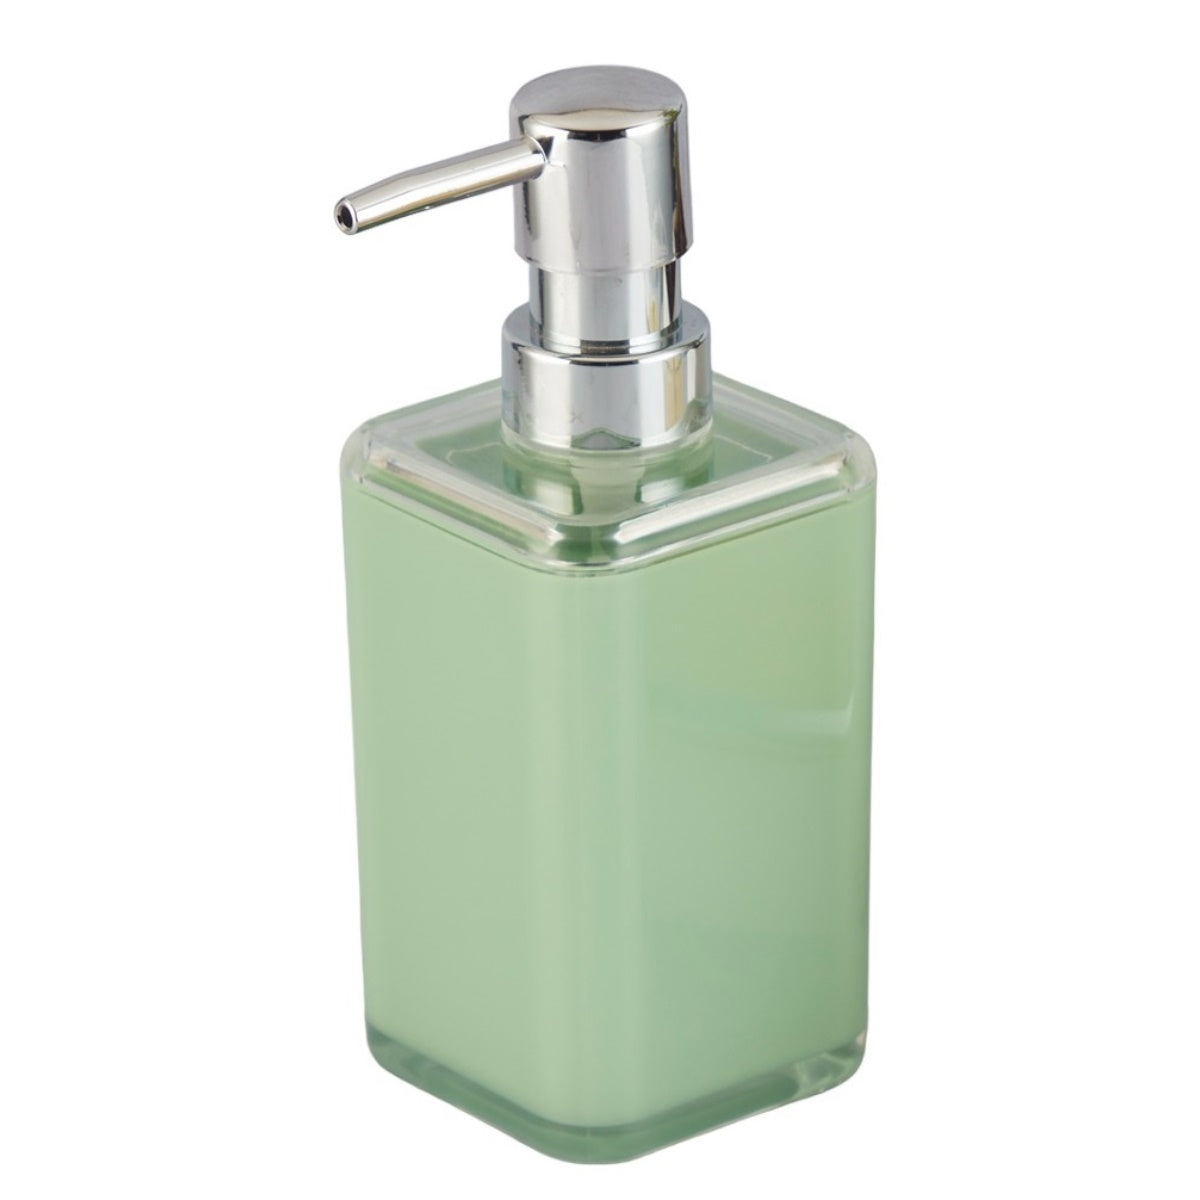 Acrylic Soap Dispenser Pump for Bathroom for Bath Gel, Lotion, Shampoo (10015)